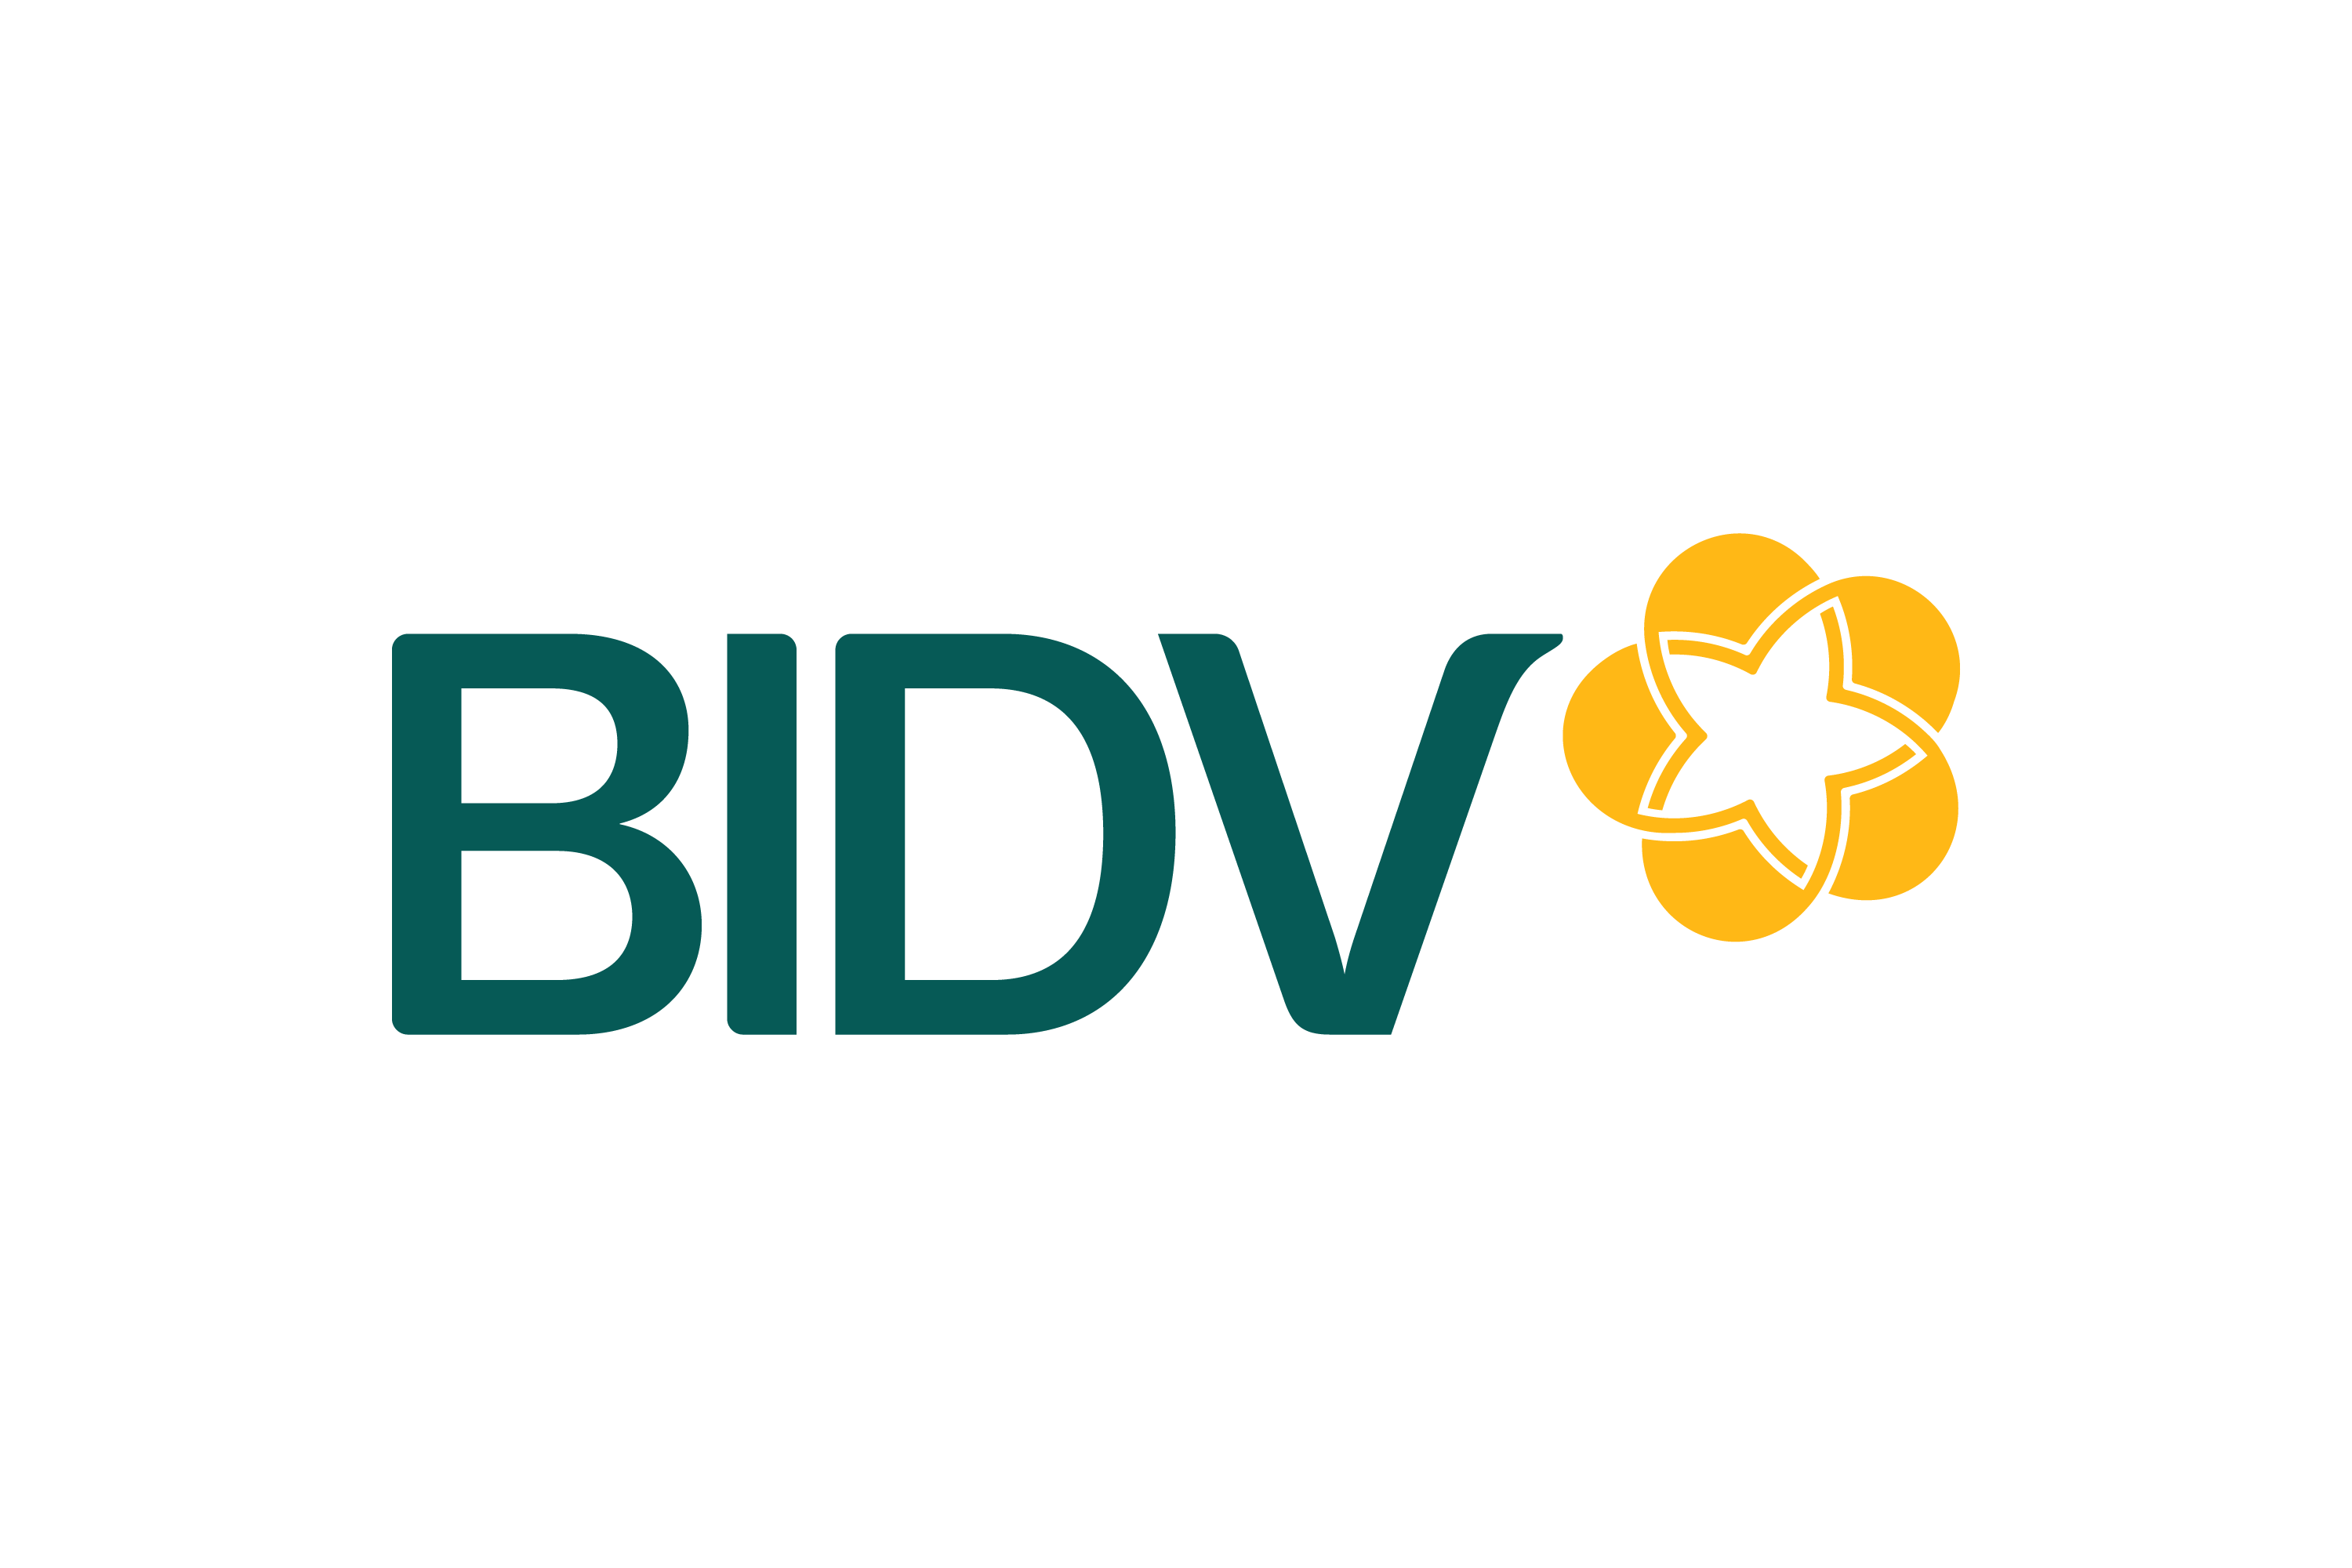 Logo ngân hàng BIDV